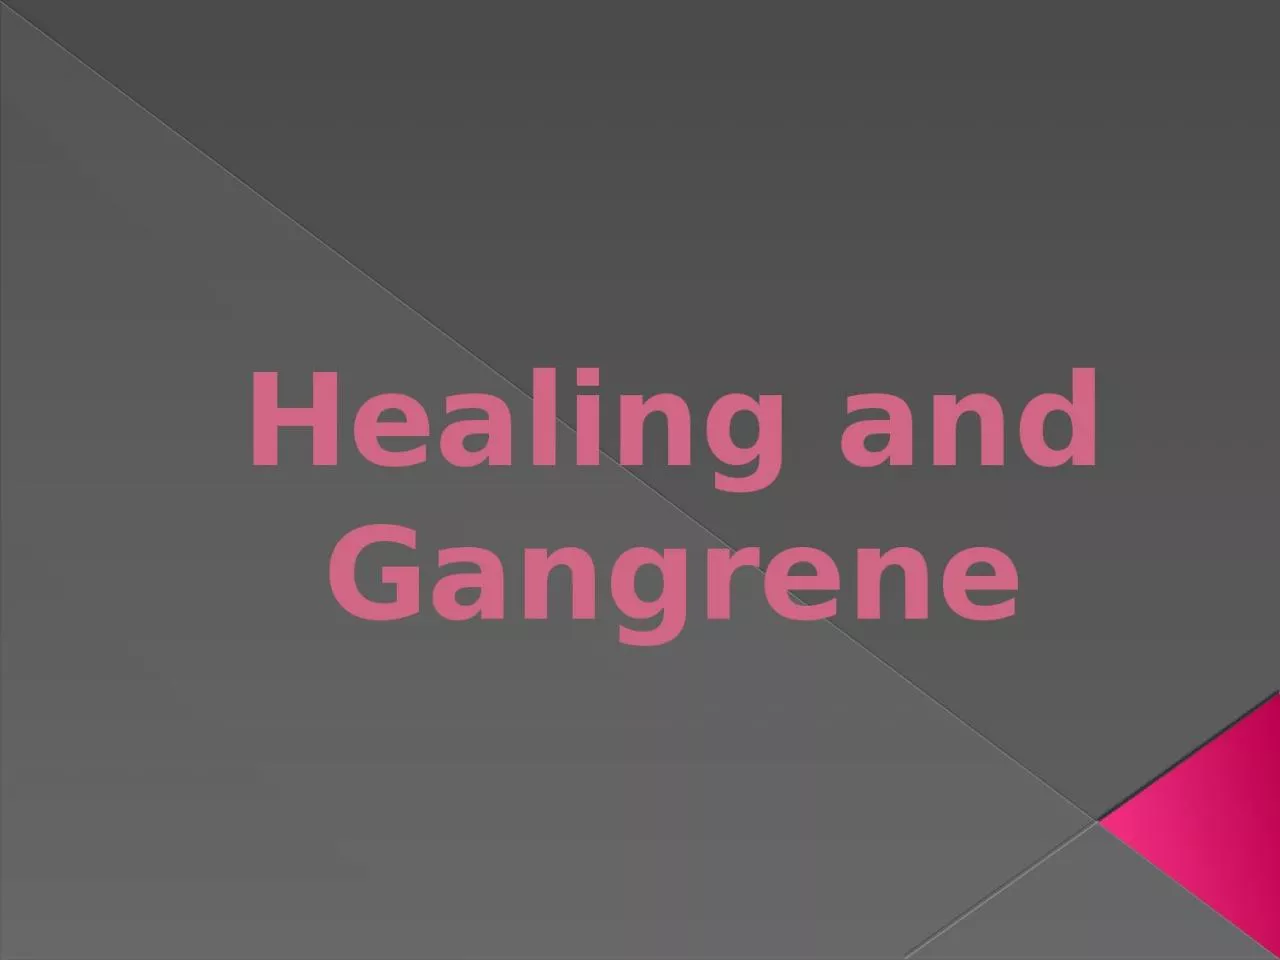 Healing and Gangrene Gangrene: